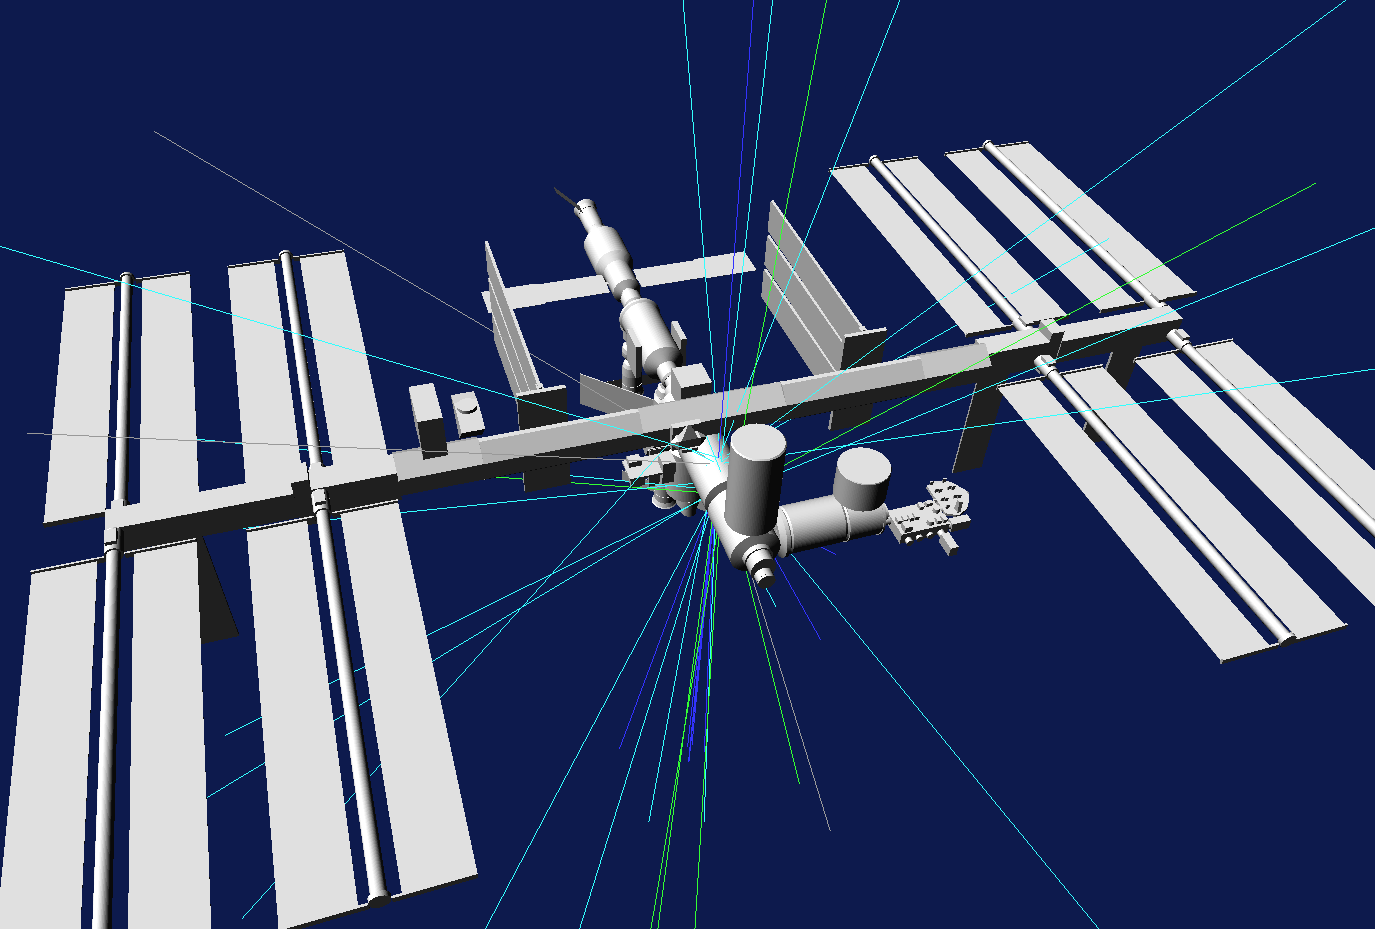 Simulation Geant4 de la Station spatiale internationale